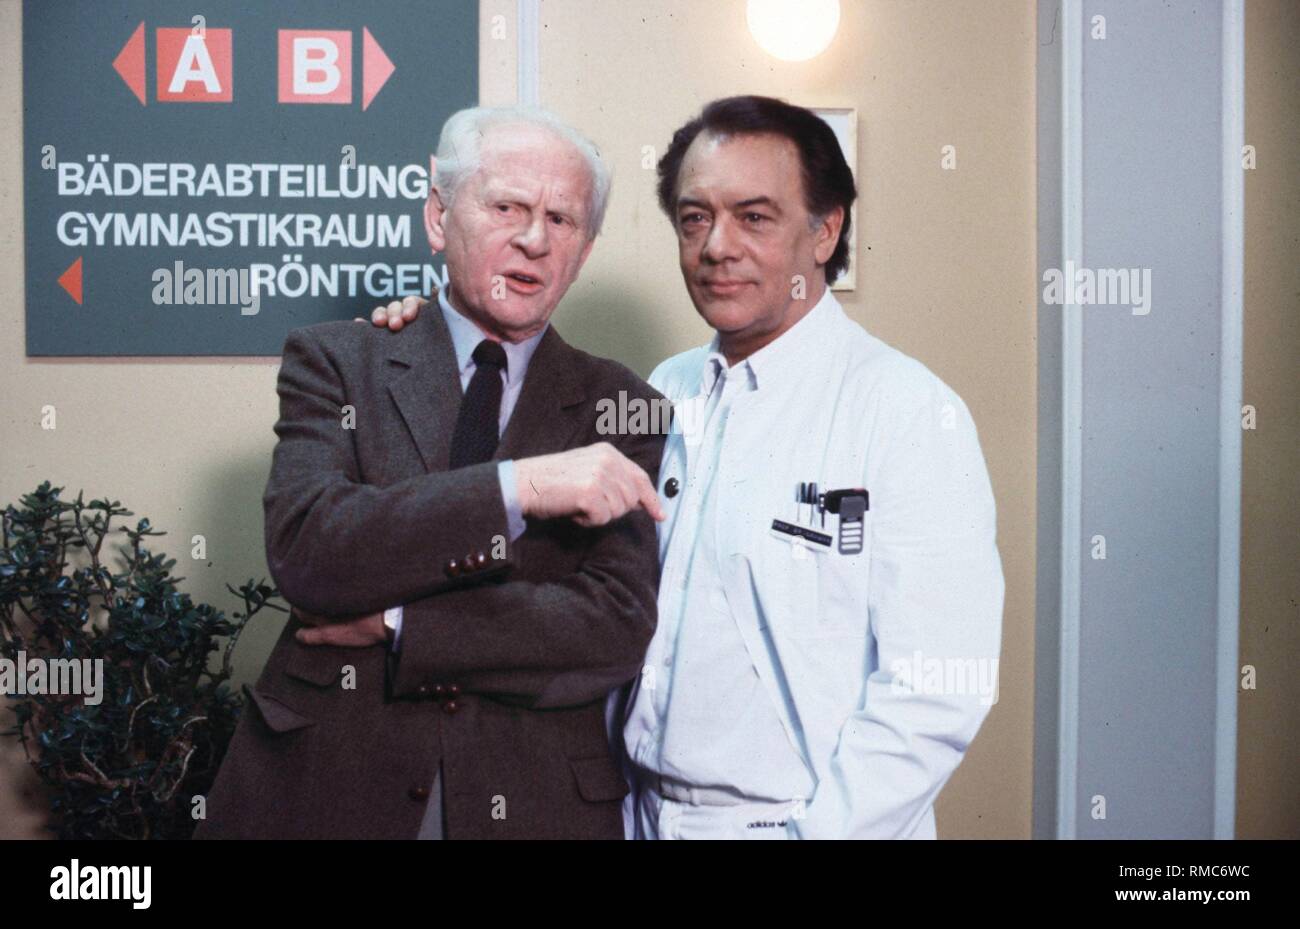 Einer der beliebtesten deutschen Schauspieler, kulle Wussow, ist pleite. Die Scheidung von seiner Frau Yvonne sein Vermögen verbraucht hat, die Rolle bietet ausgetrocknet sind. Enttäuscht, sagt er: "Ich werde nie einen Arzt wieder spielen". Von 1985 bis 1992, die jetzt 73-jährige Schauspieler, war die beliebteste deutsche TV-Arzt als Professor Brinkmann in der "Der Schwarzwald Klinik". Am Samstag, 14. Dezember 2002 Wussow spielt eine Santa Claus (ein Großvater für Weihnachten, ARD, 20:15 Uhr). Unser Foto von 1988 zeigt ihn in "Der Schwarzwald Klinik" mit Gerd Froebe (links). Stockfoto